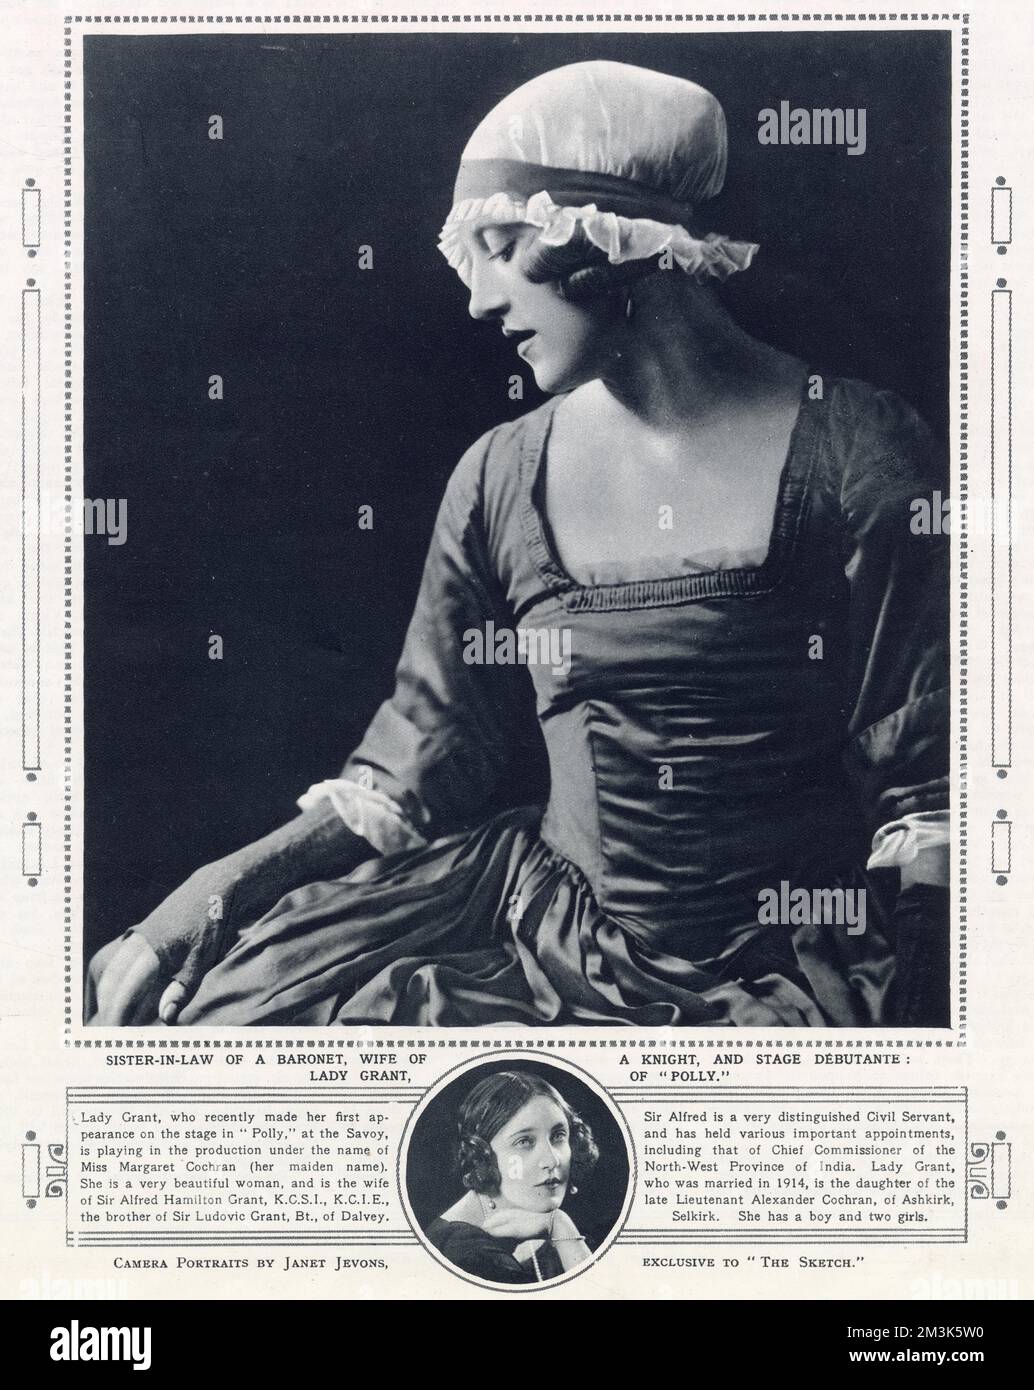 Lady Grant, nee Miss Margaret Cochran, in costume per la commedia 'Polly' al Savoy Theatre, Londra, 1923. Lady Grant era la moglie di Sir Alfred Hamilton Grant, ex commissario capo della provincia nord-occidentale dell'India. Foto Stock